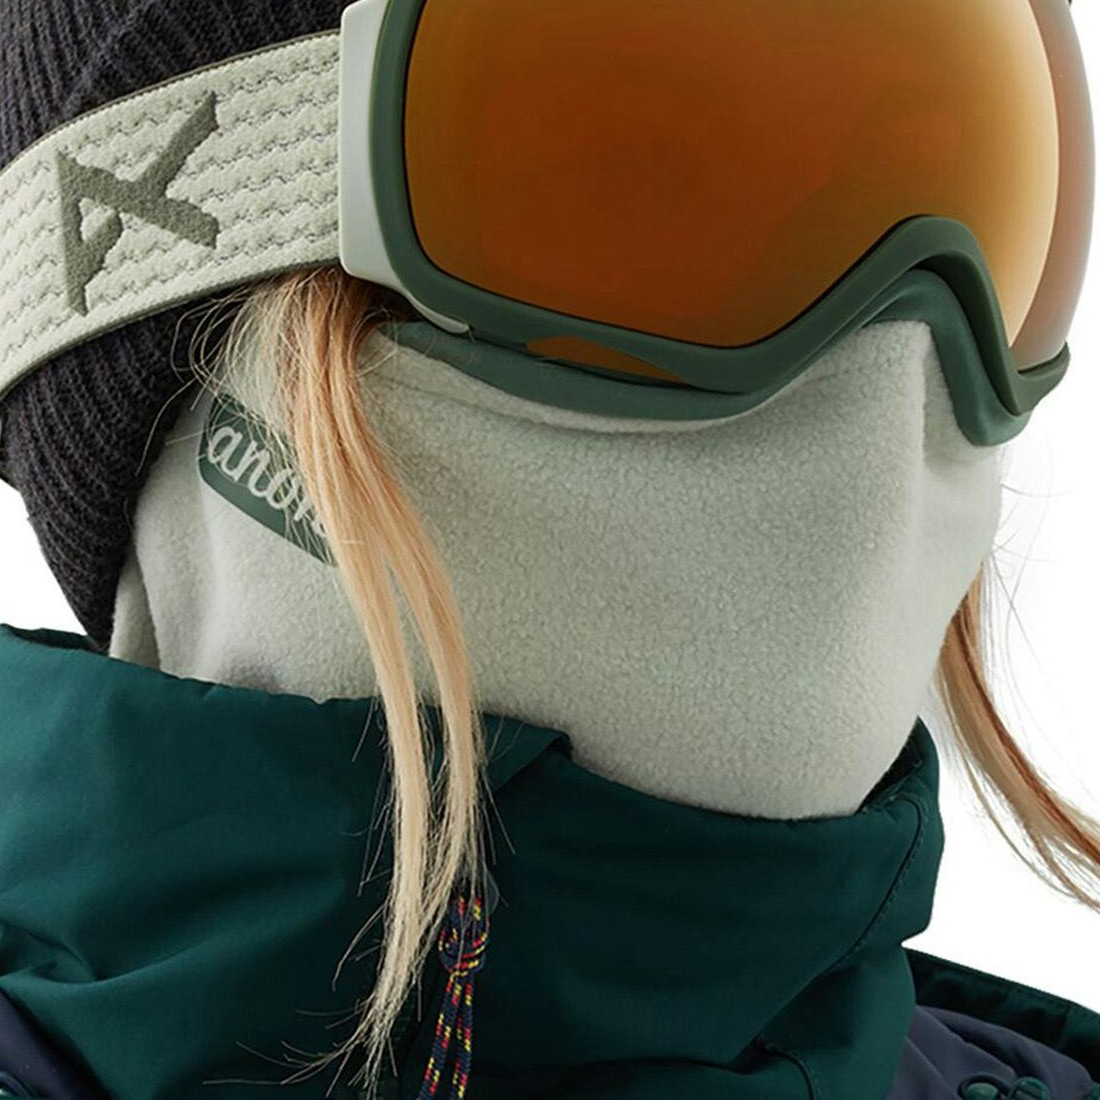 Photos - Ski Wear ANON Microfur MFI Fleece Neckwarmer, One Size Hedge 23813100300 